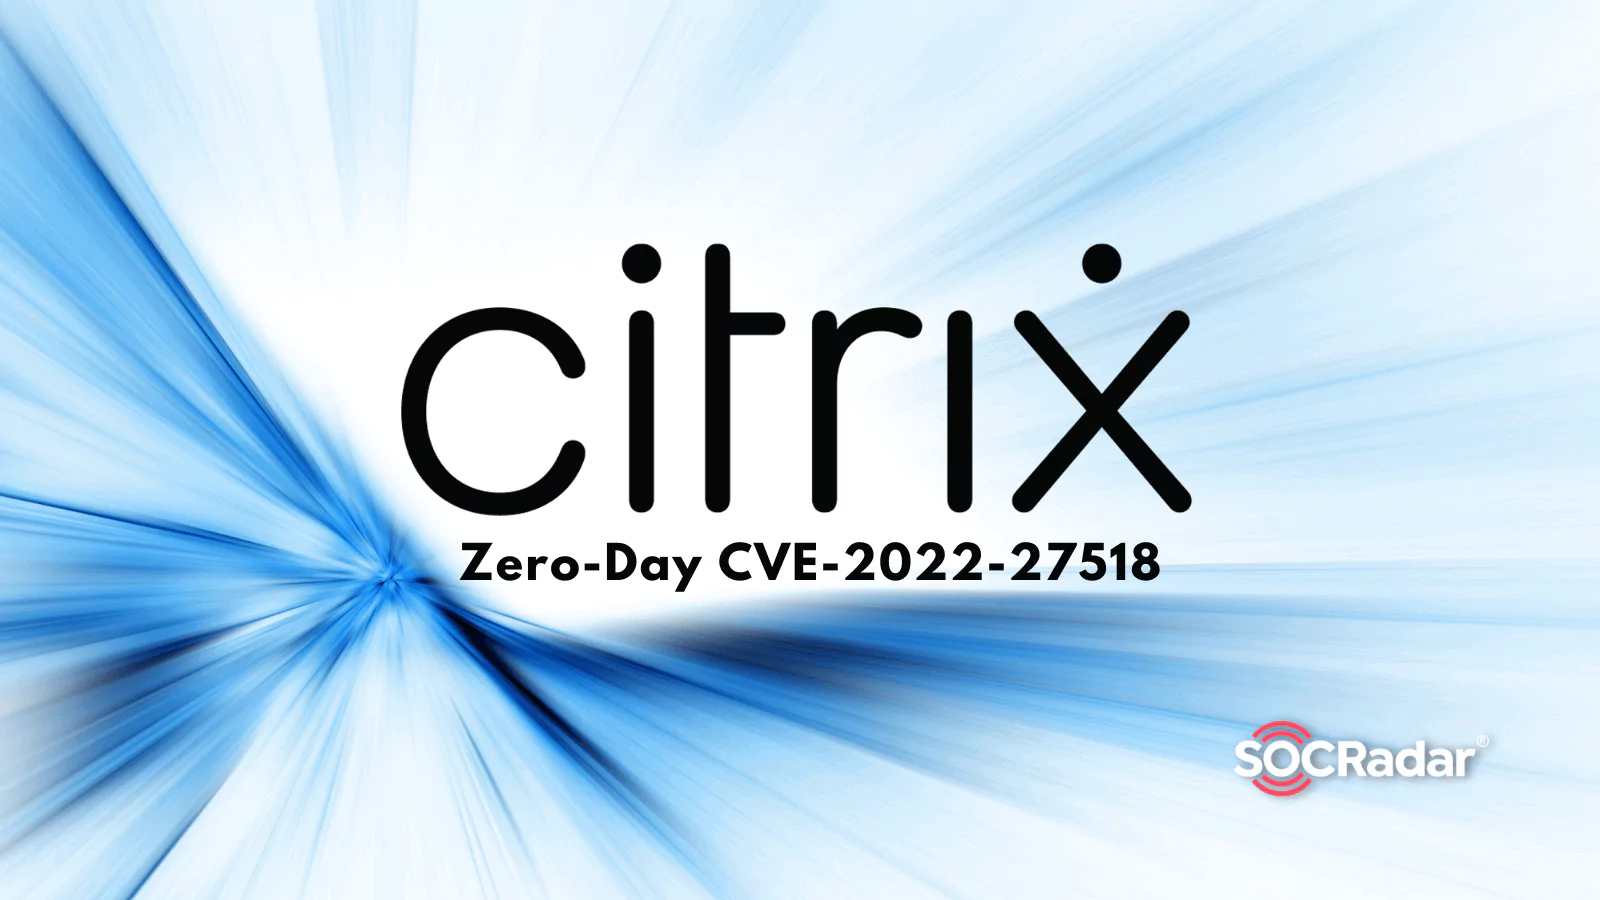 citrix logo transparent